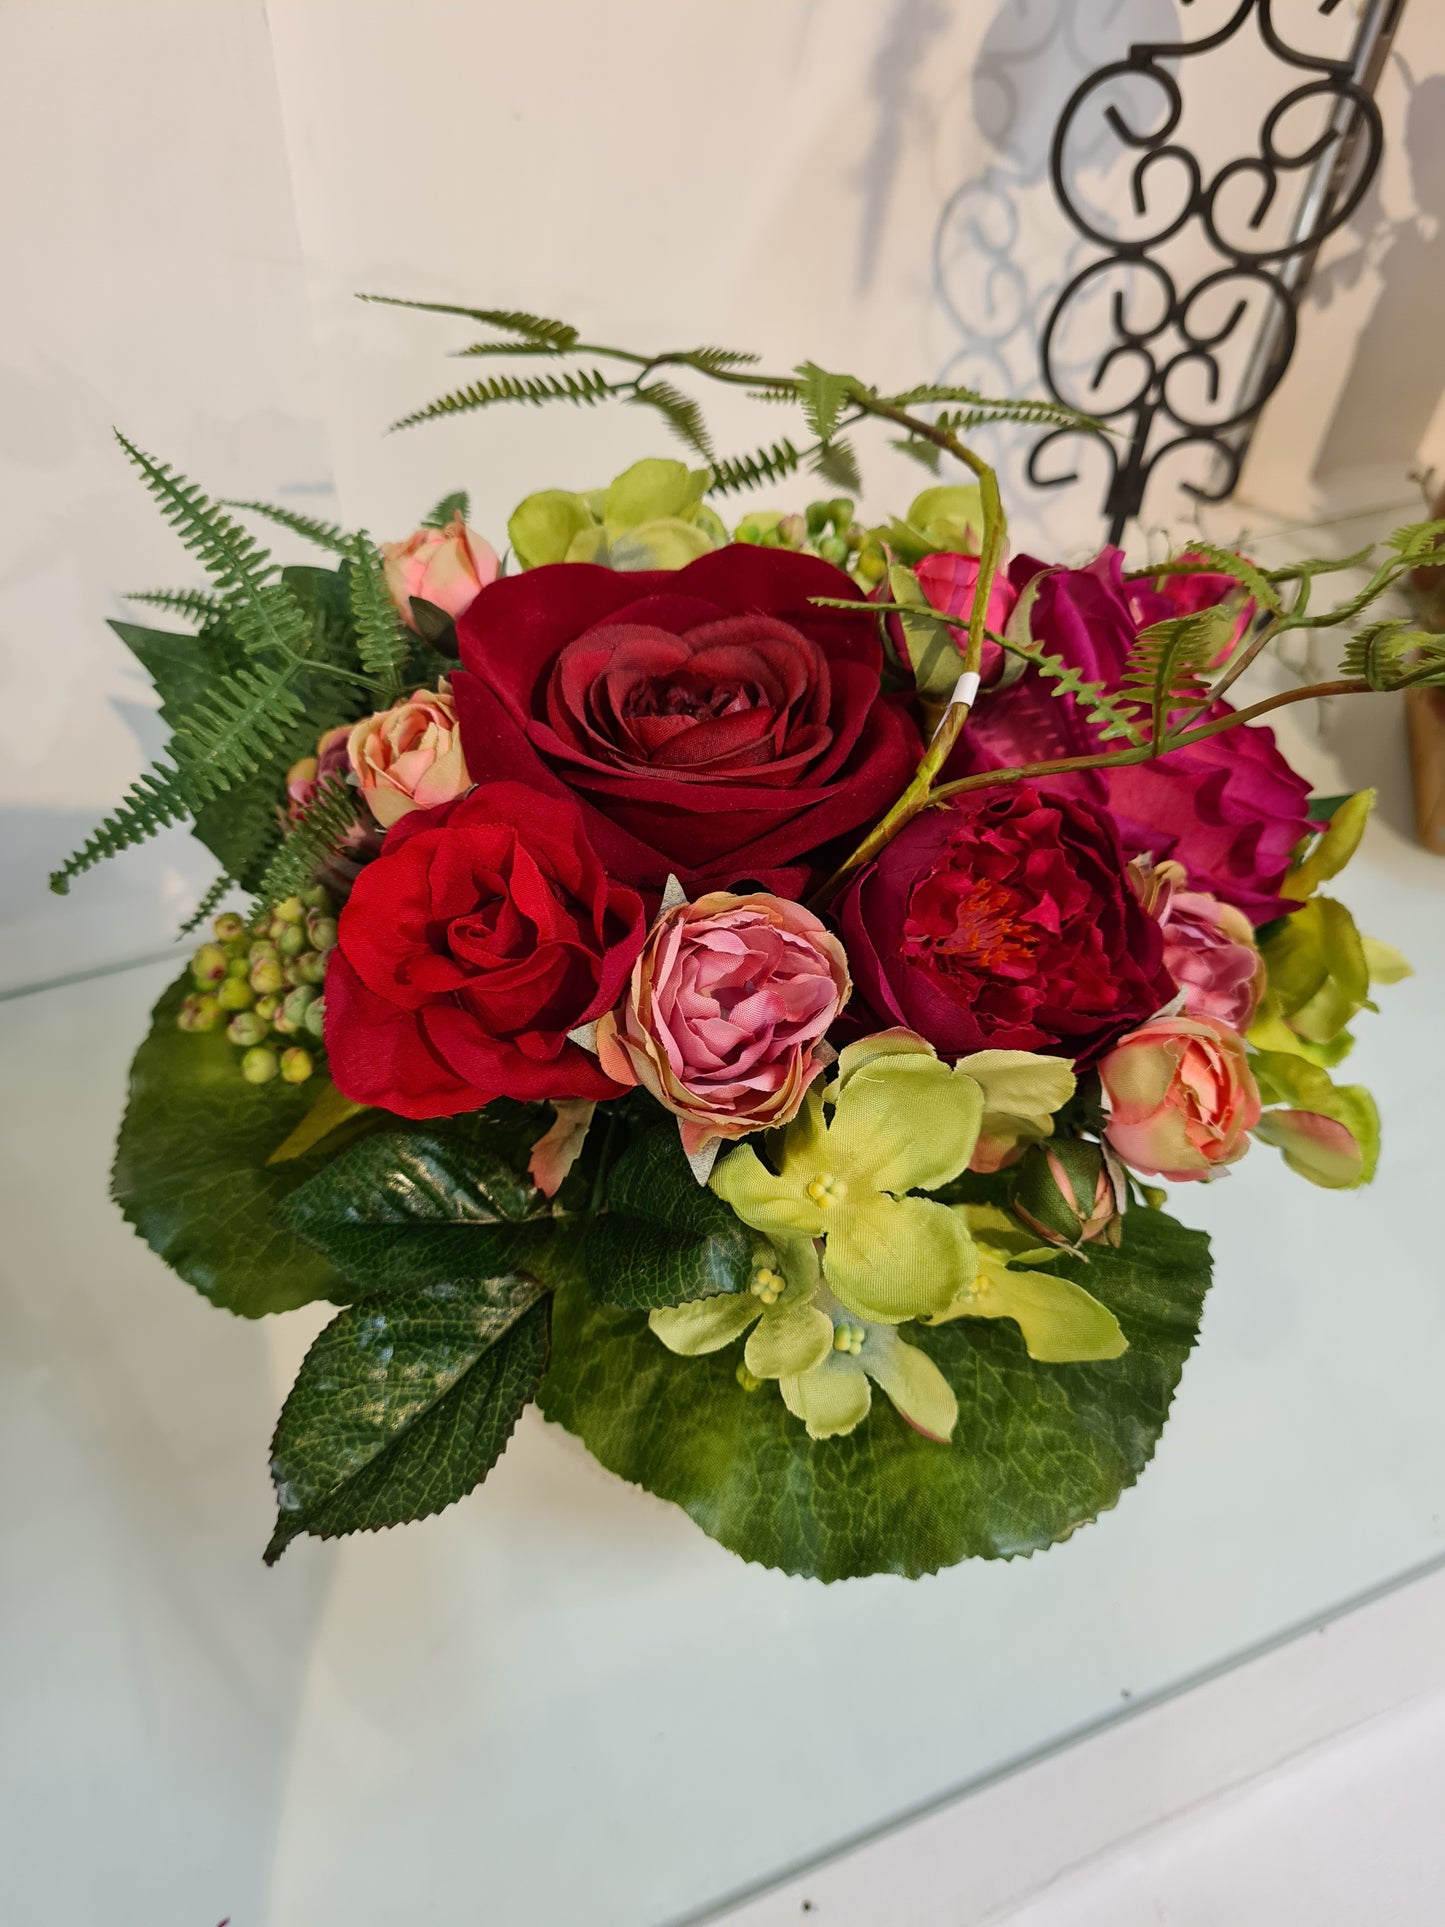 Blumenstrauß mit Rosen in rot, bordeaux & rose